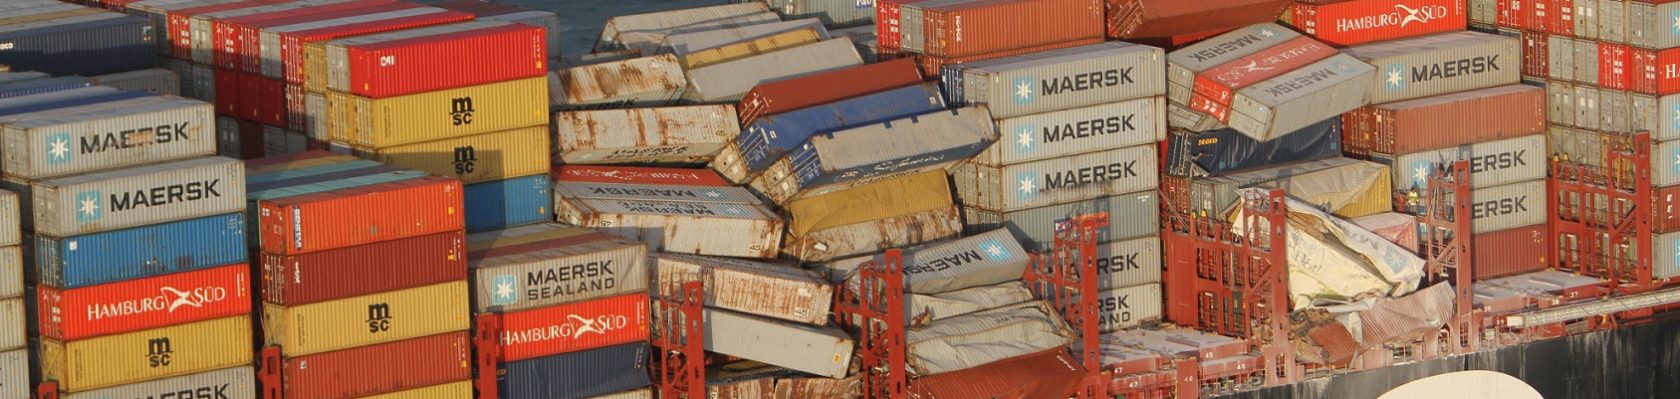 Containerschip MSC (Fotocredits: Kustwacht Nederland)